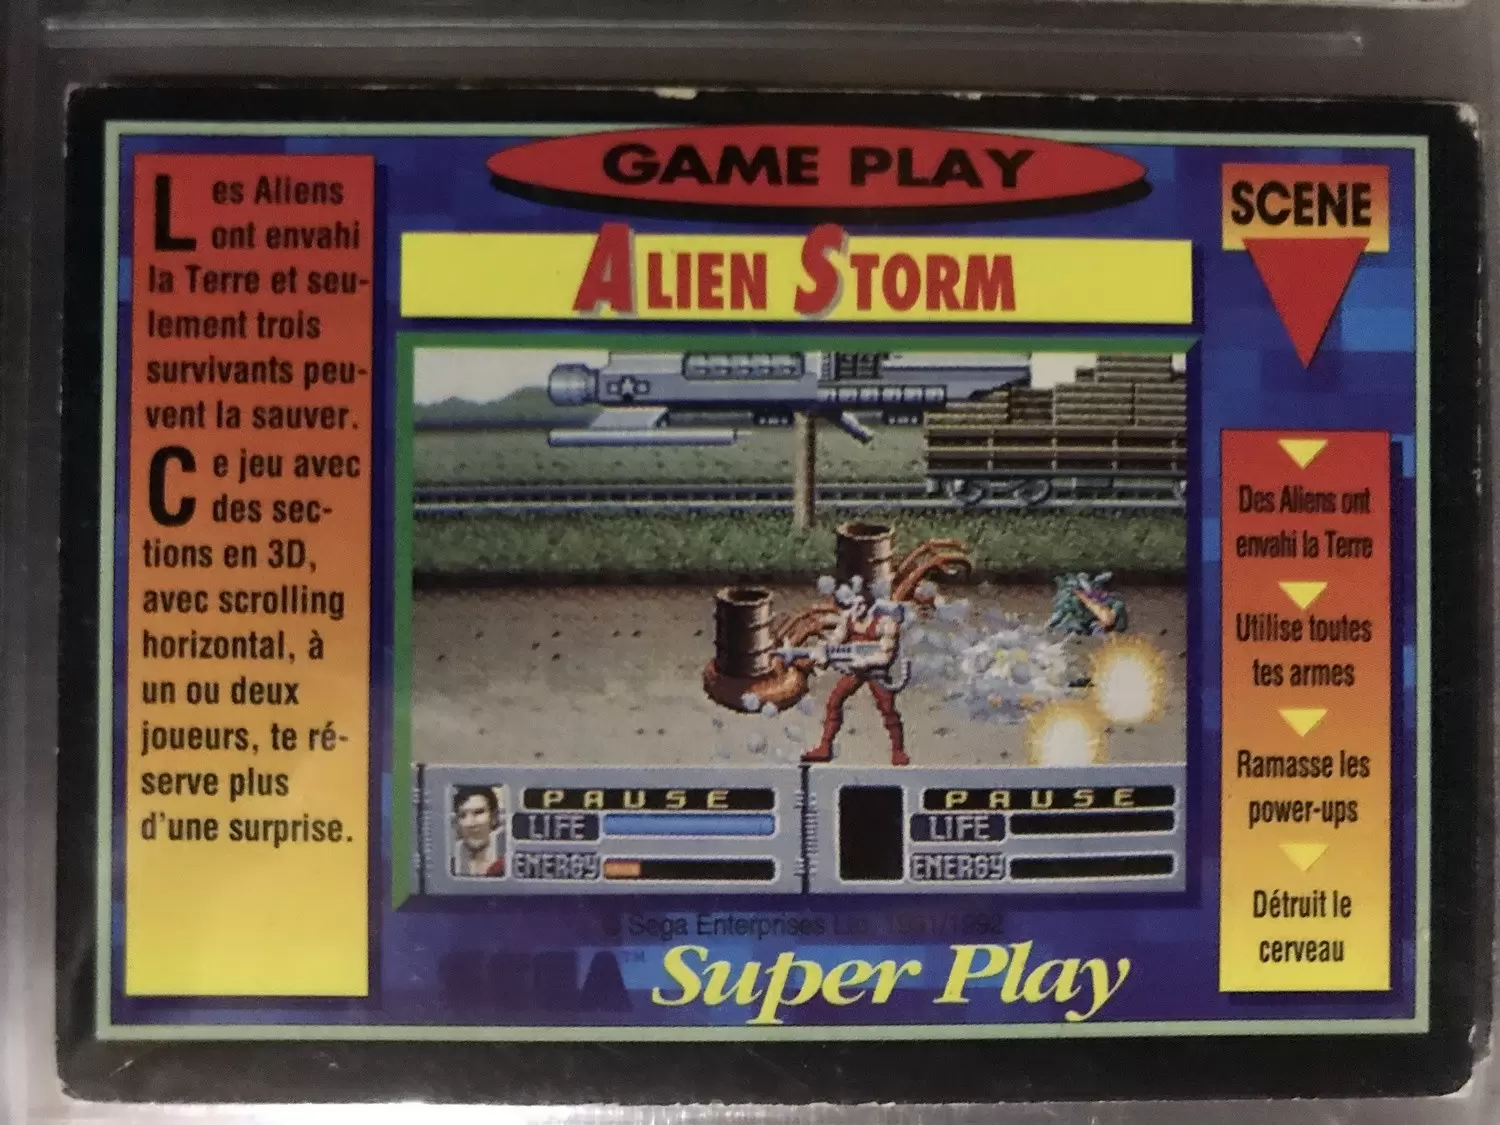 Sega Super Play - Alien Storm